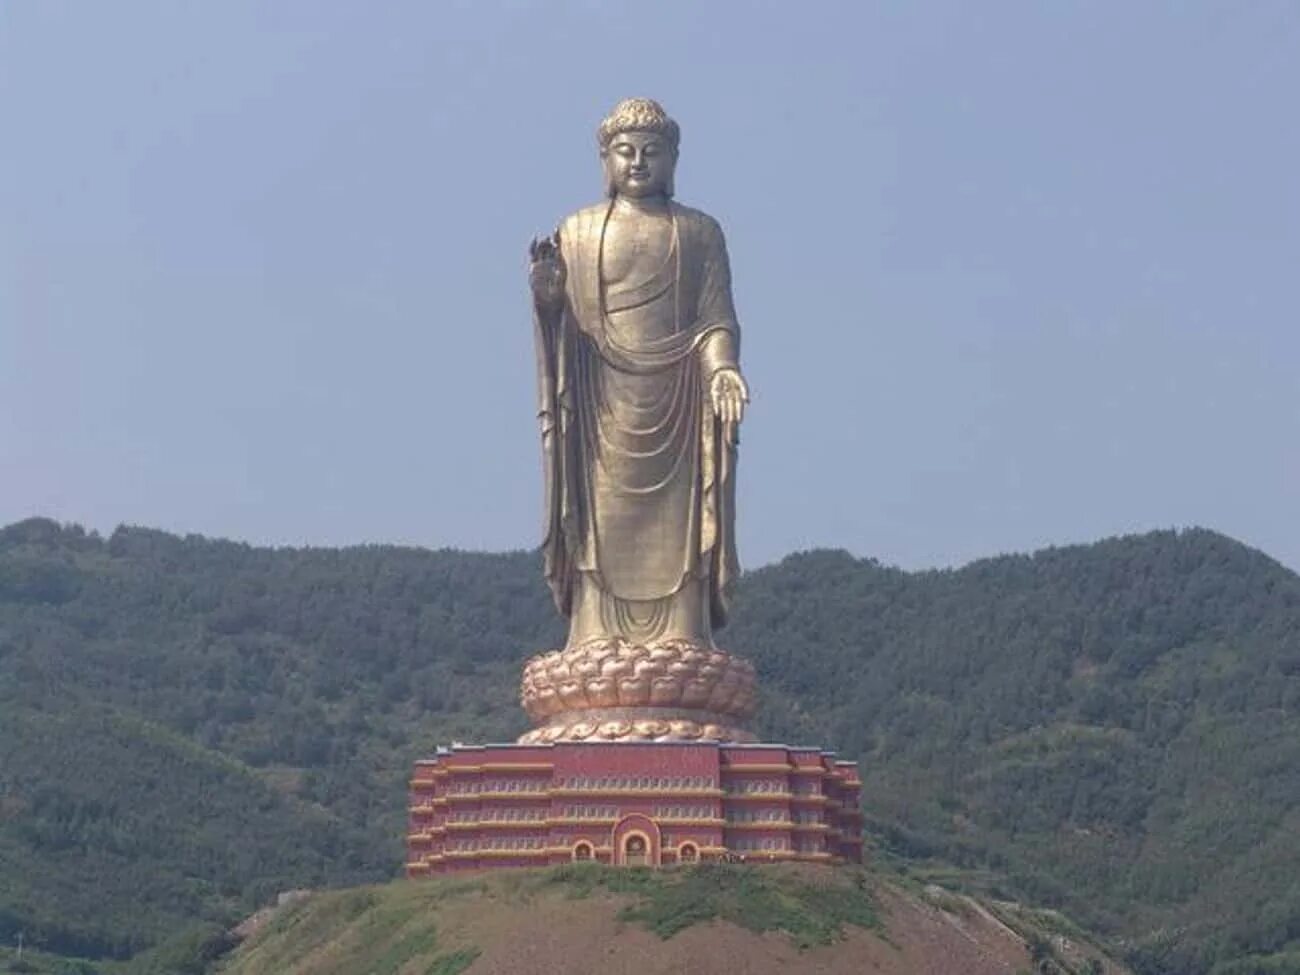 Большие статуи. Будда весеннего храма Китай. Статуя Будды весеннего храма в Китае. Весенний храм Будды, Китай, 153 метра. Самая высокая статуя в мире статуя Будды 442 метра.